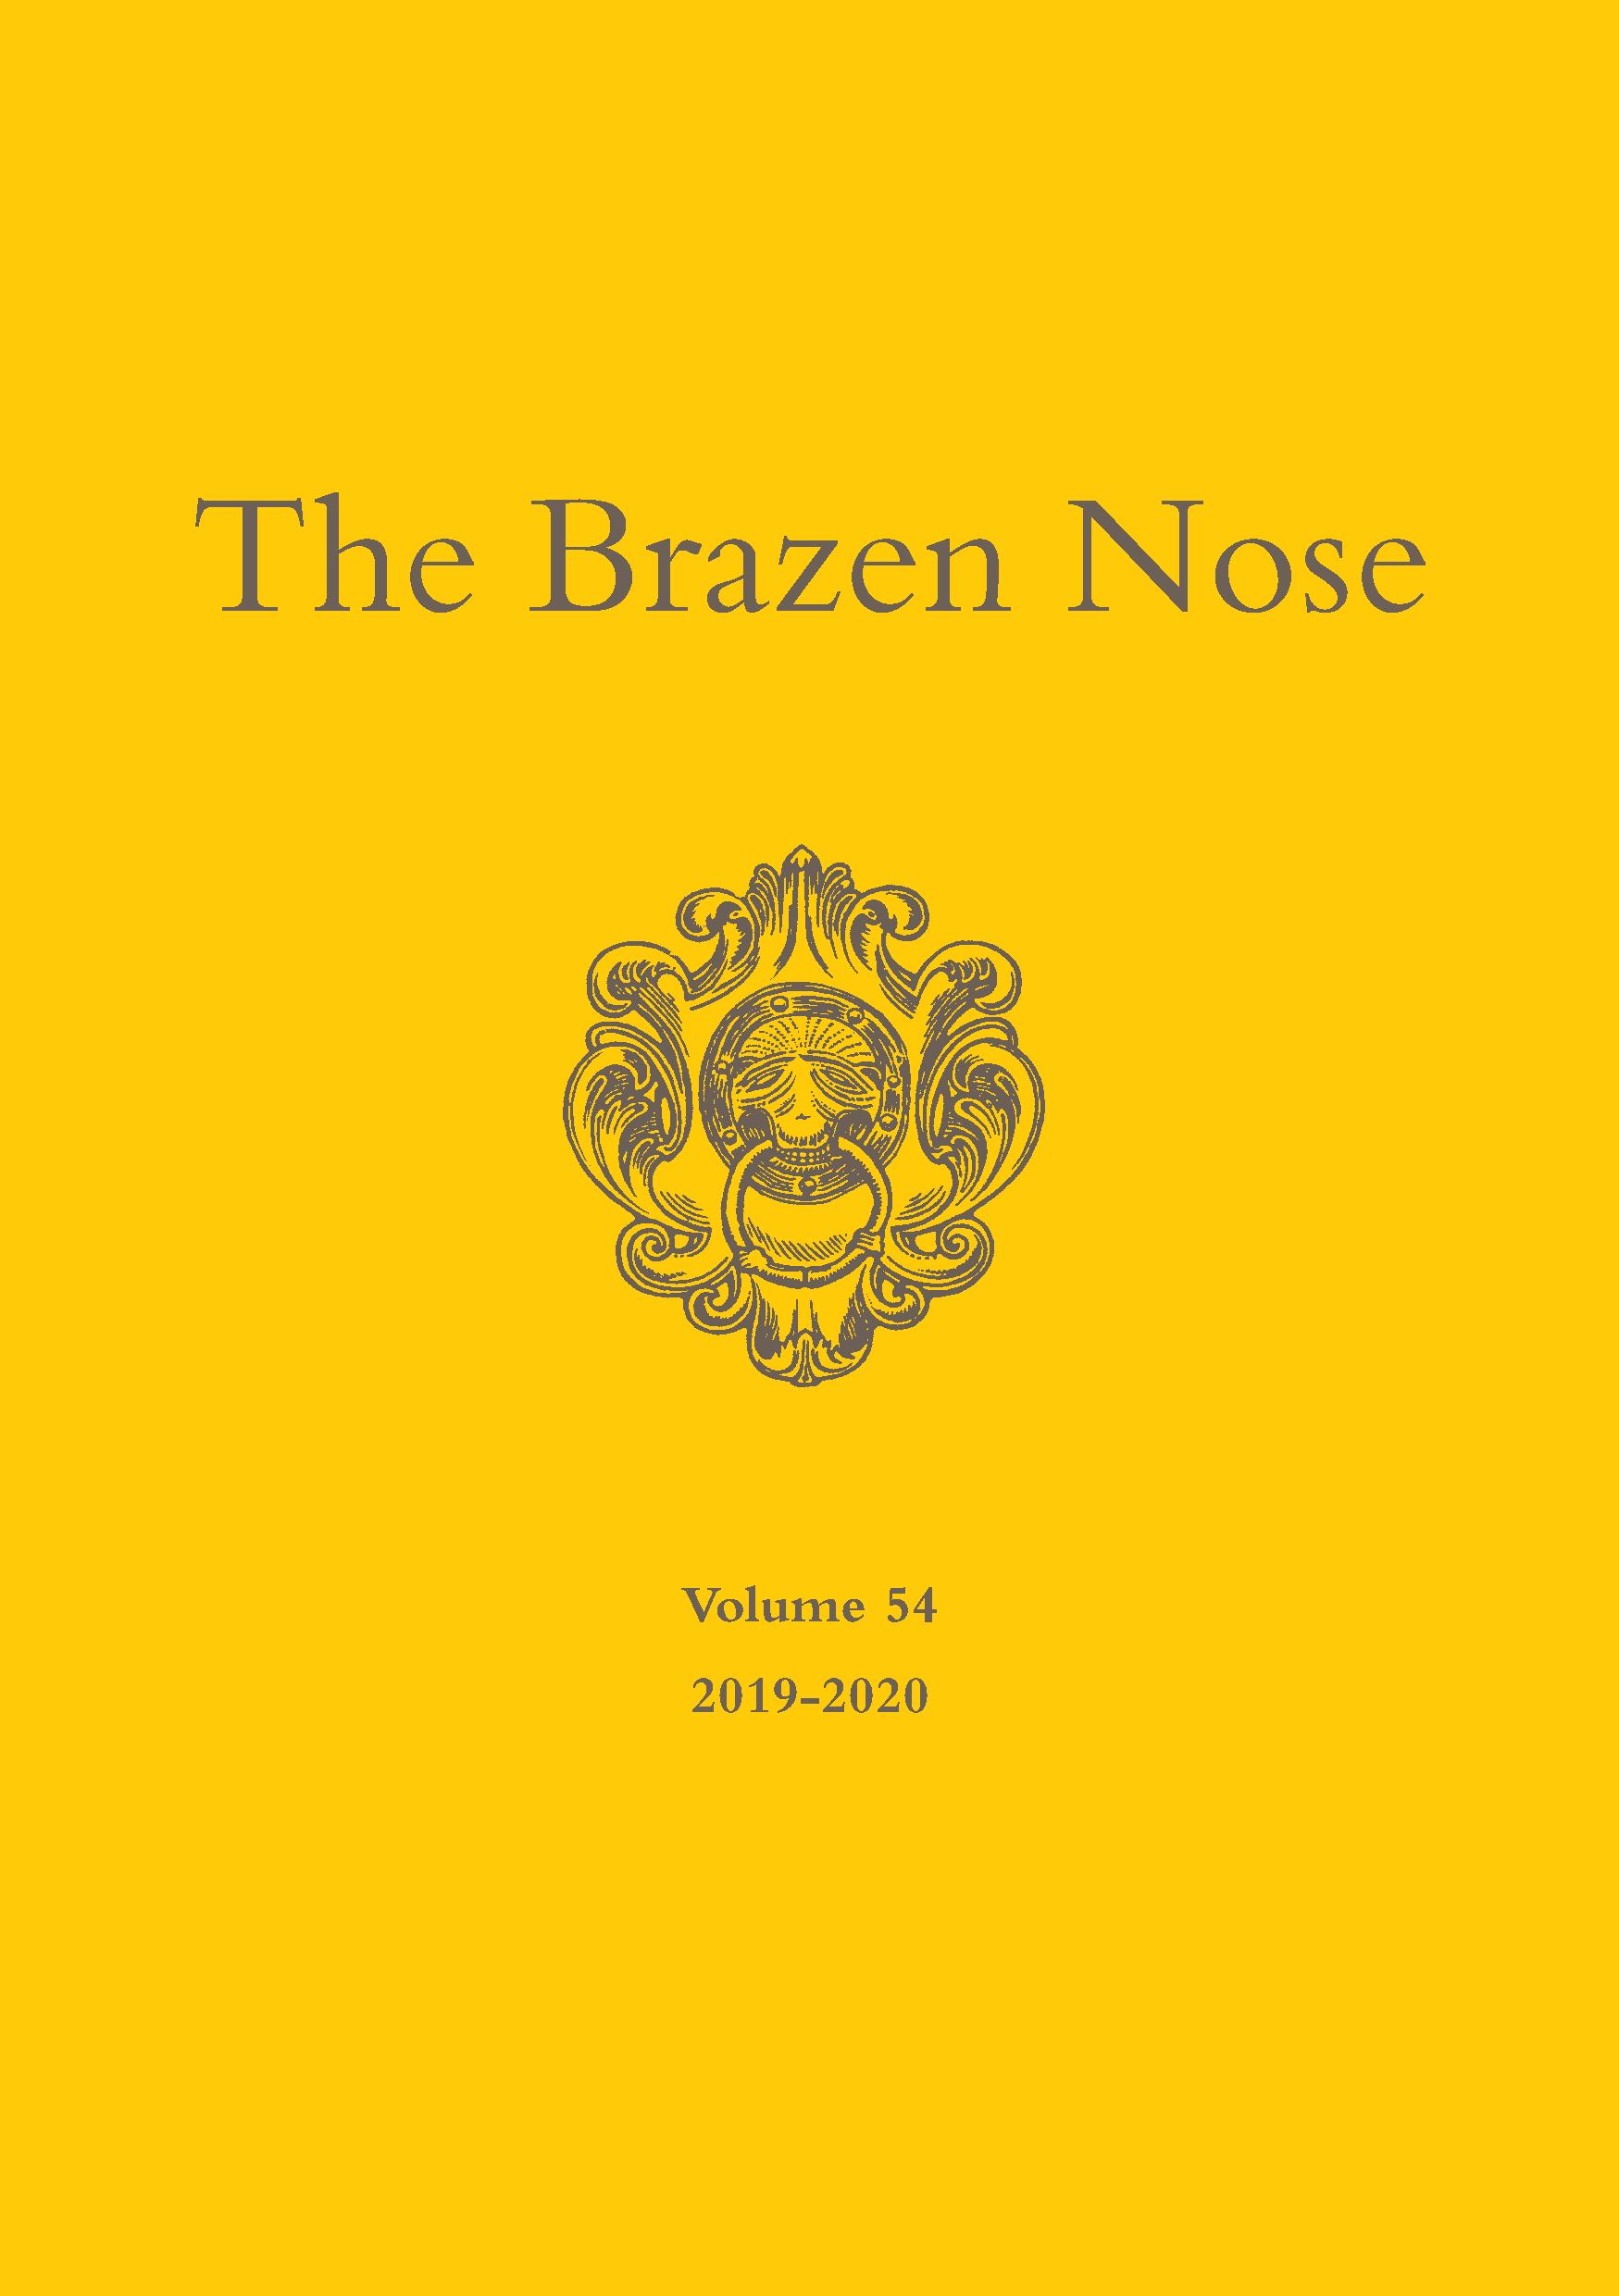 Brazen Nose Vol 54 2019 2020 Cover page